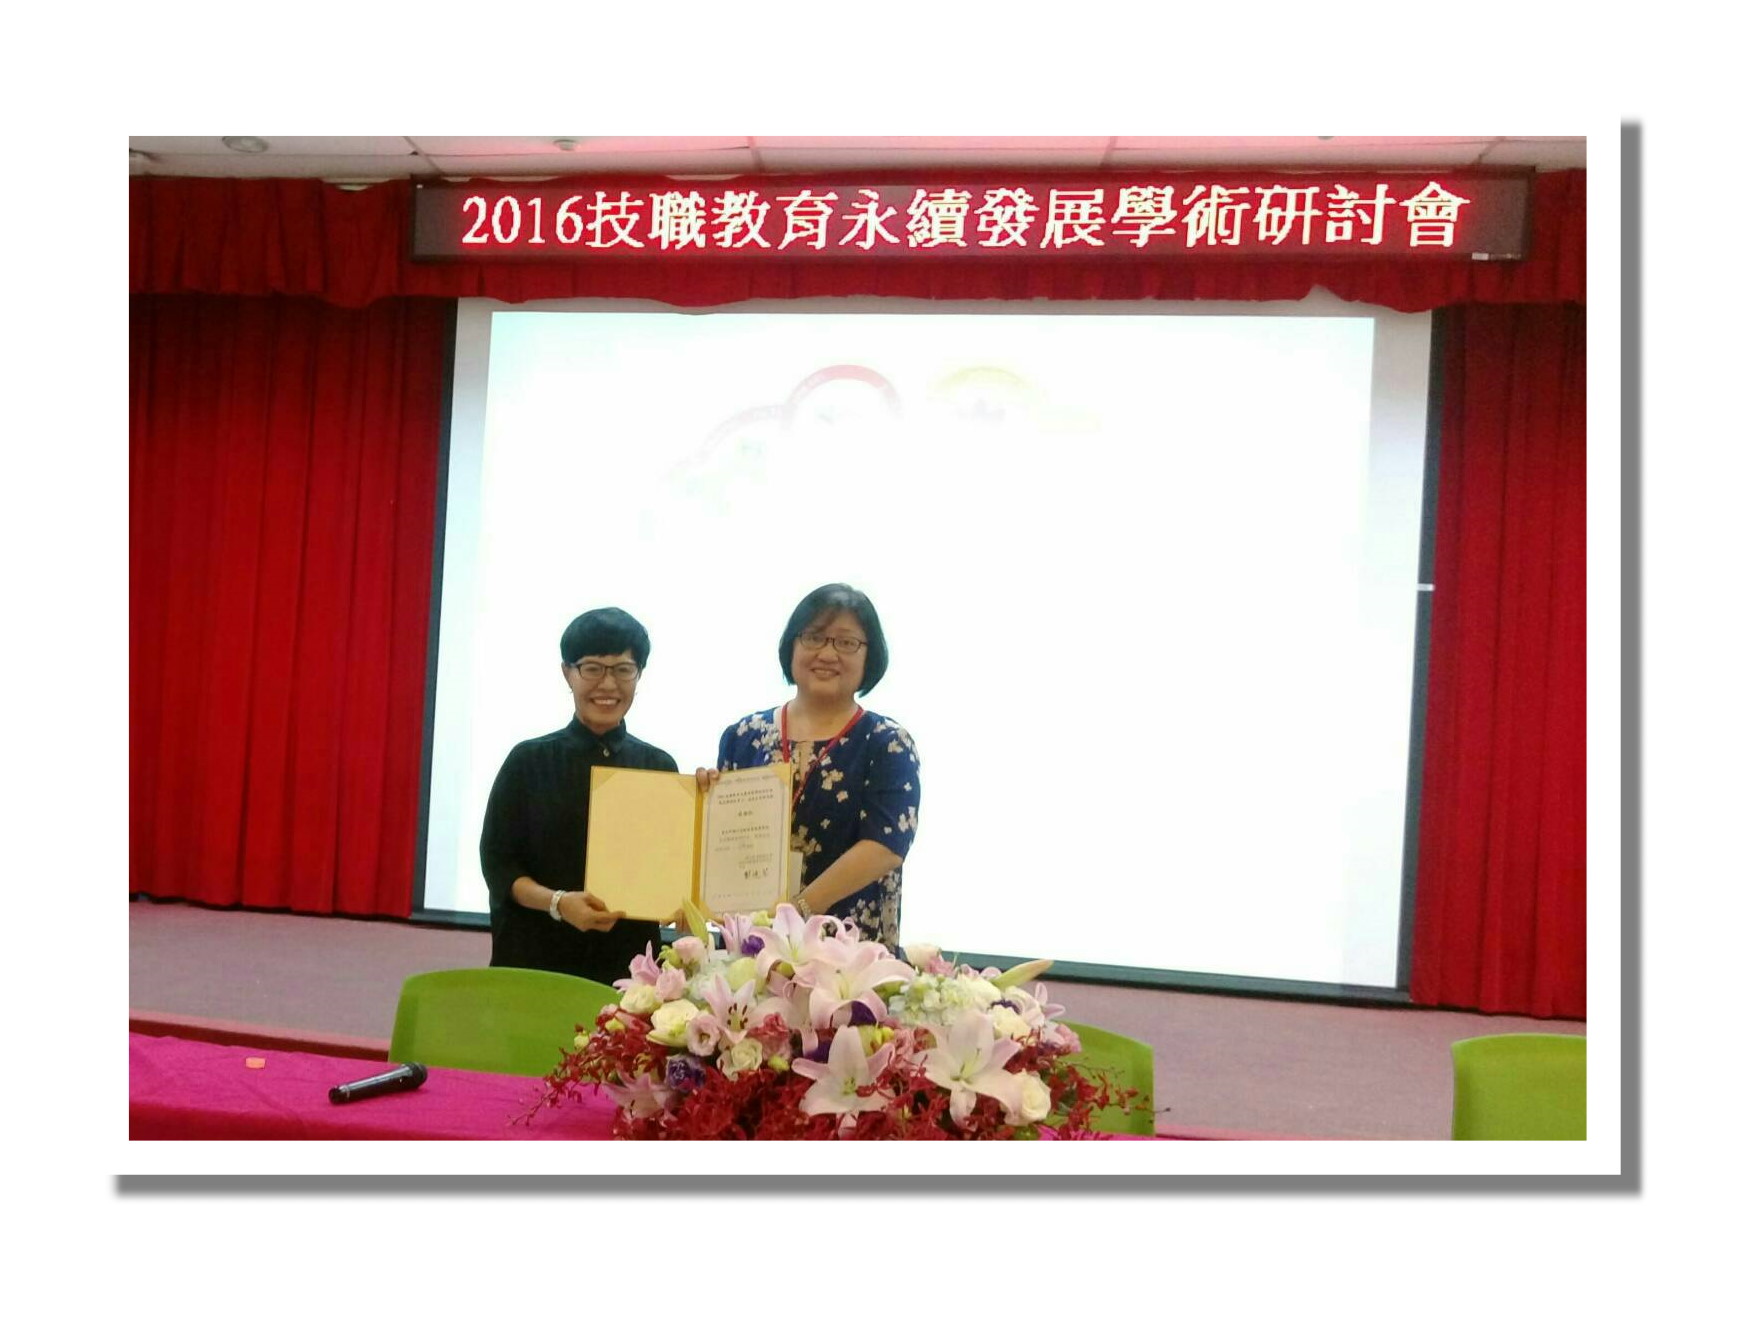 台北科技大學2016技職教育永續發展學術研討會